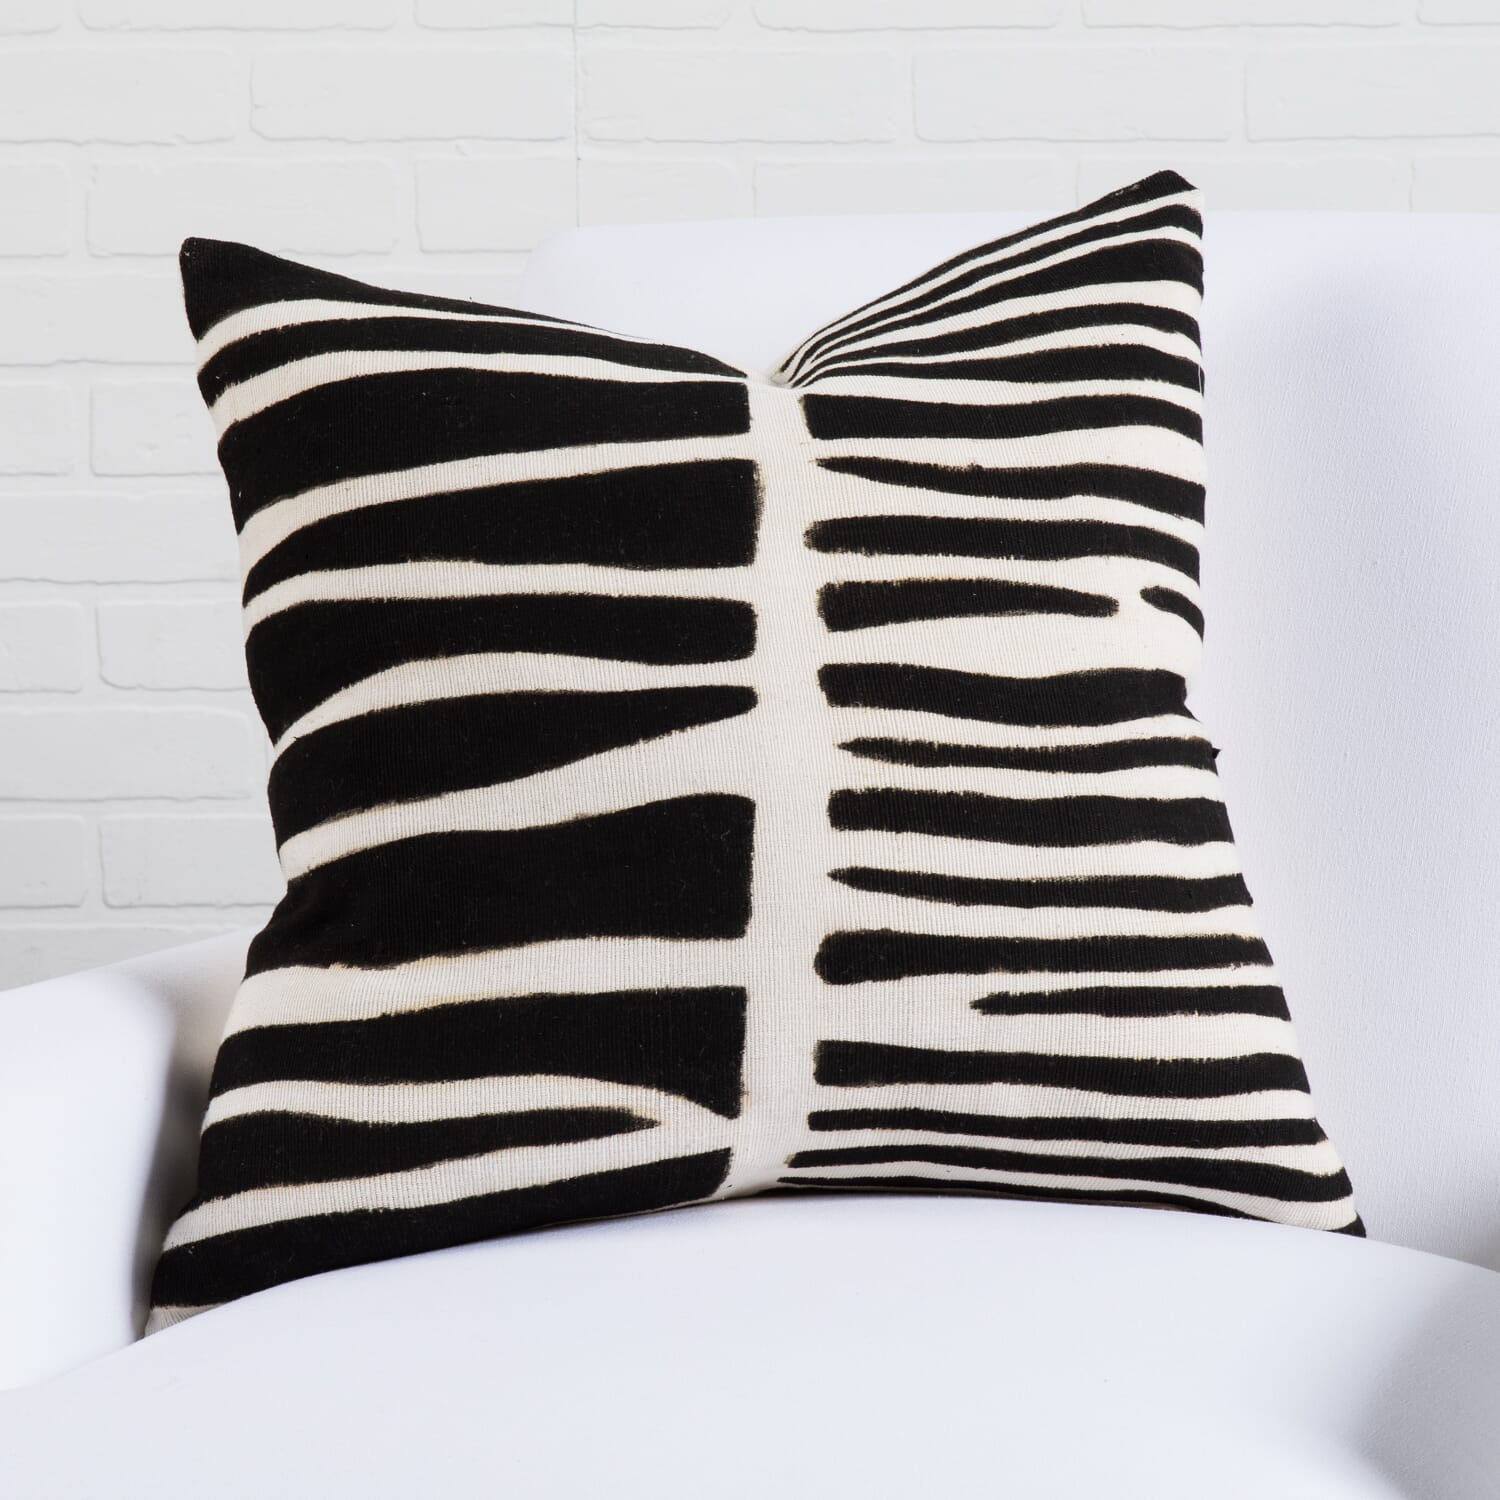 20" x 20" Zebra Pillow